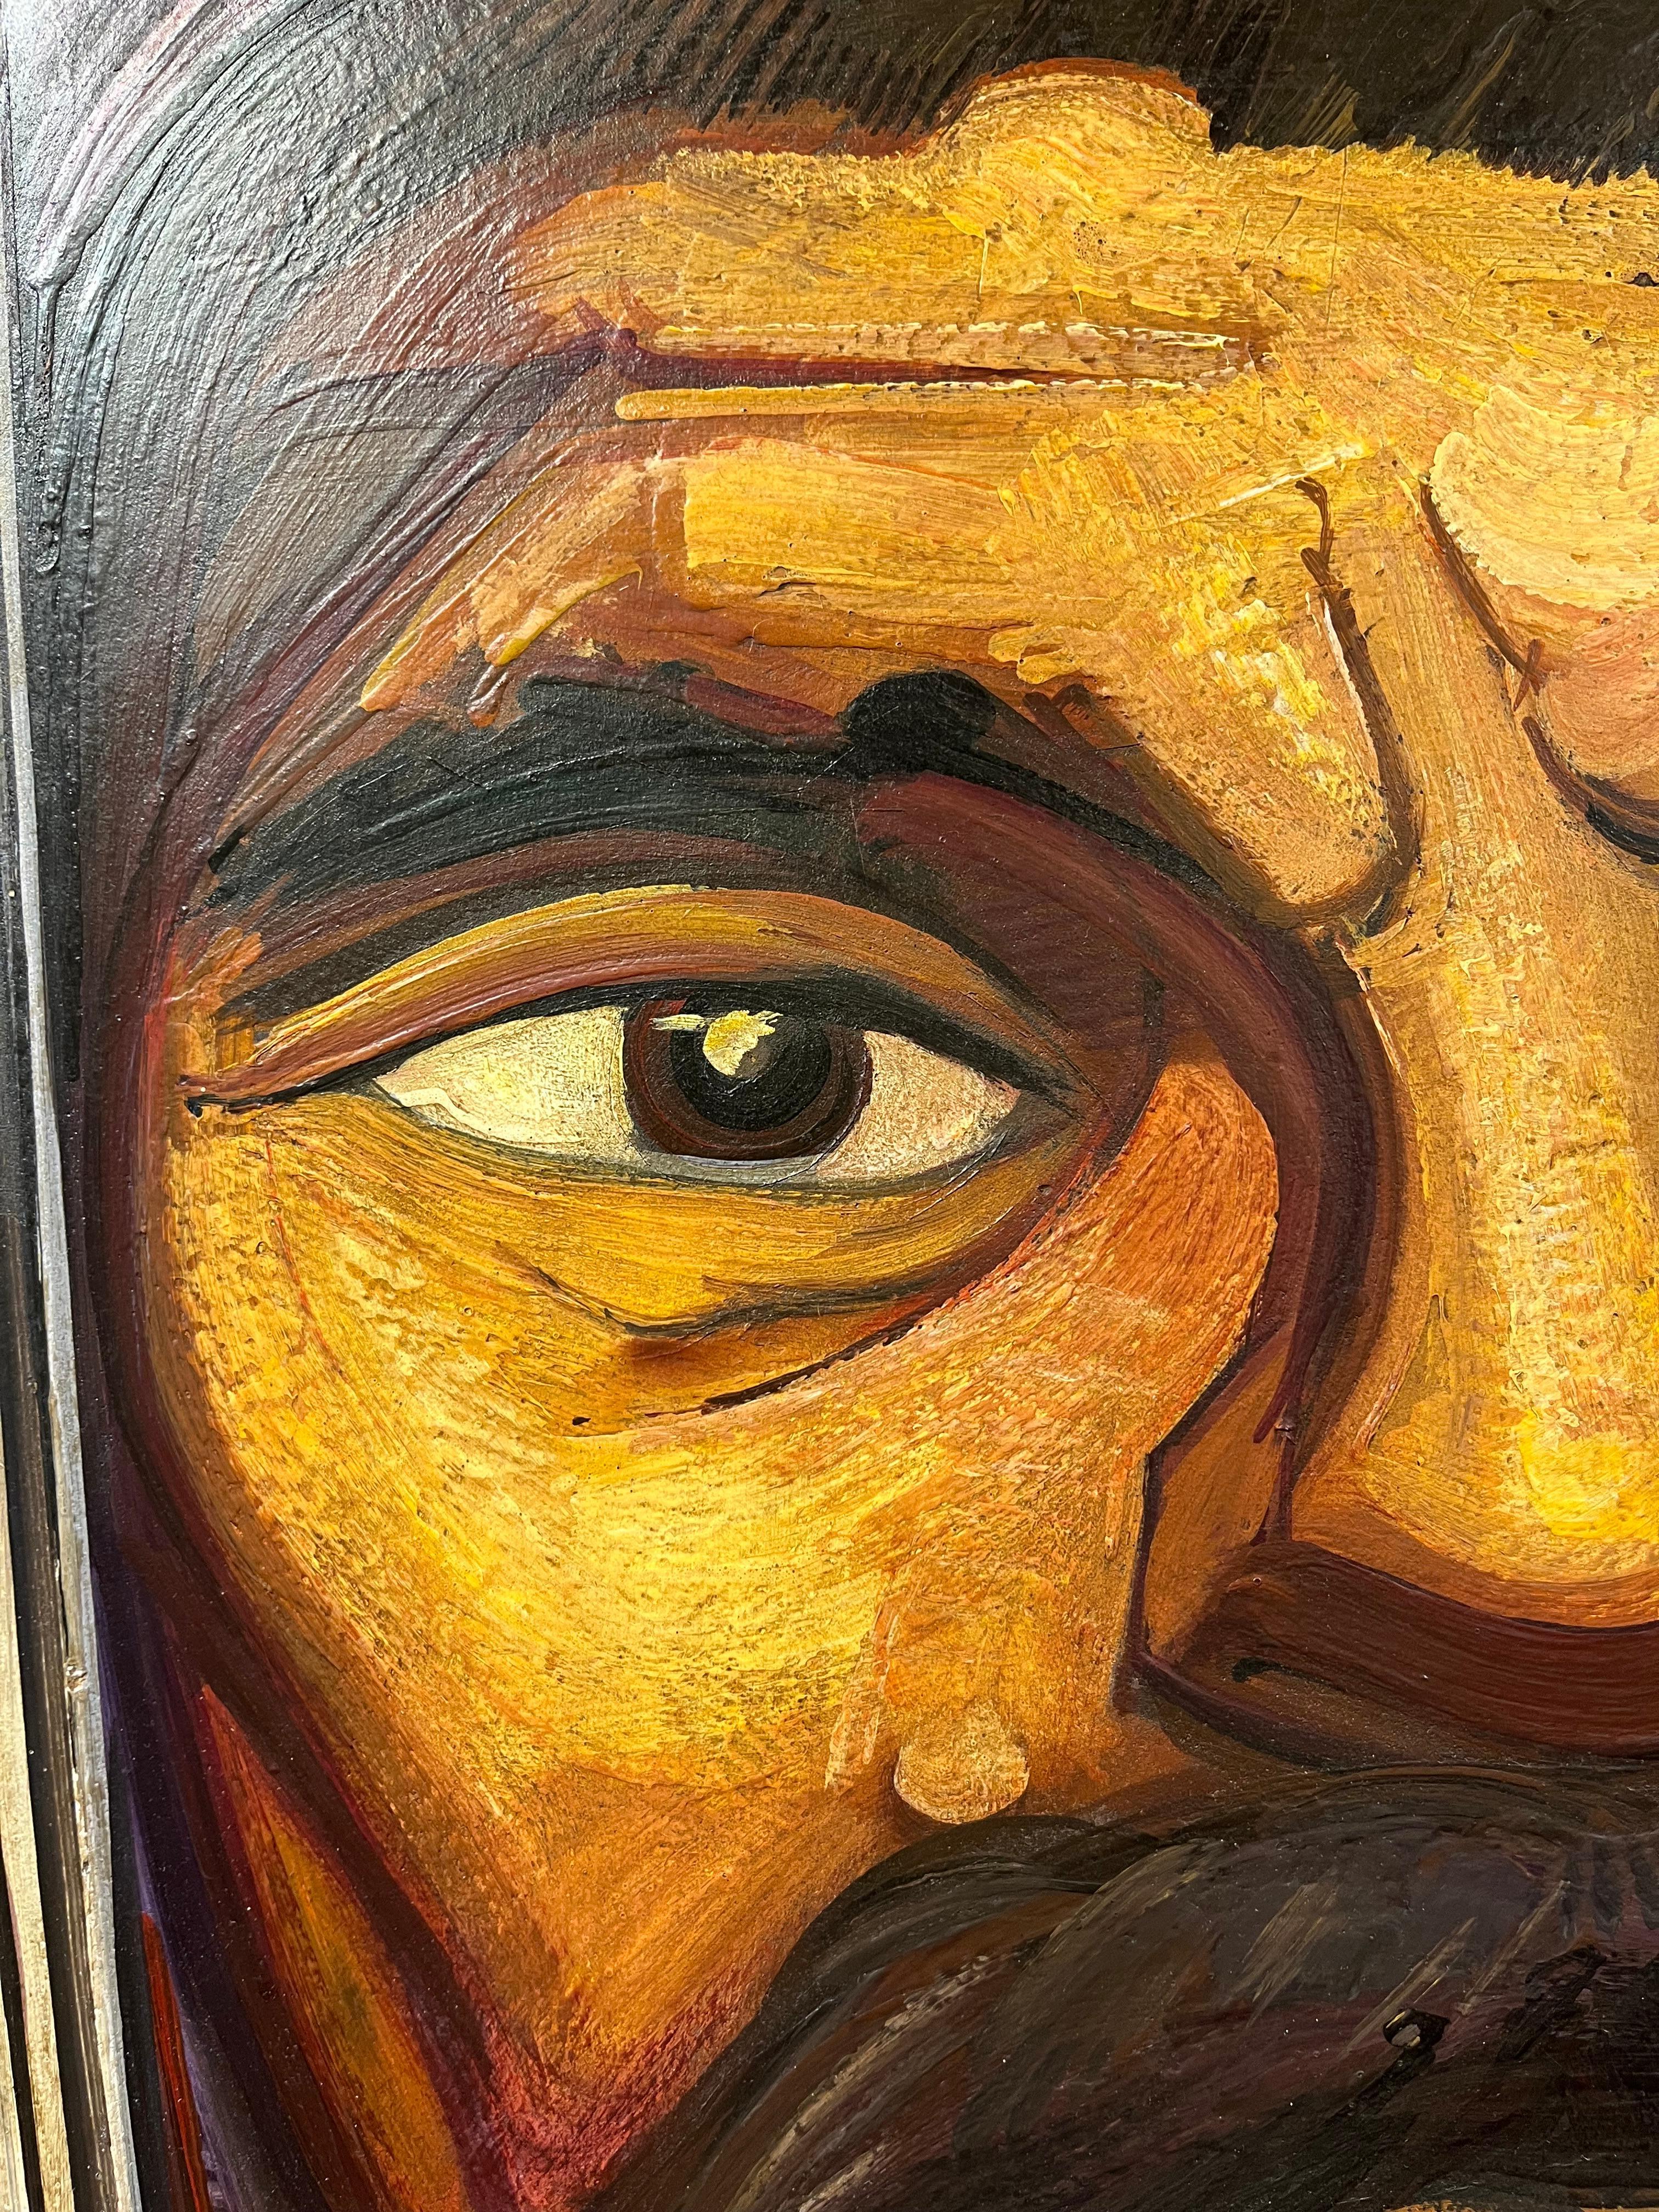 Künstler: David Alfaro Siqueiros (1896-1974) Mexikaner
Titel: Emiliano Zapata
Medium: Pyroxylin auf Holzplatte, signiert unten rechts
Größe: Ungerahmt 35